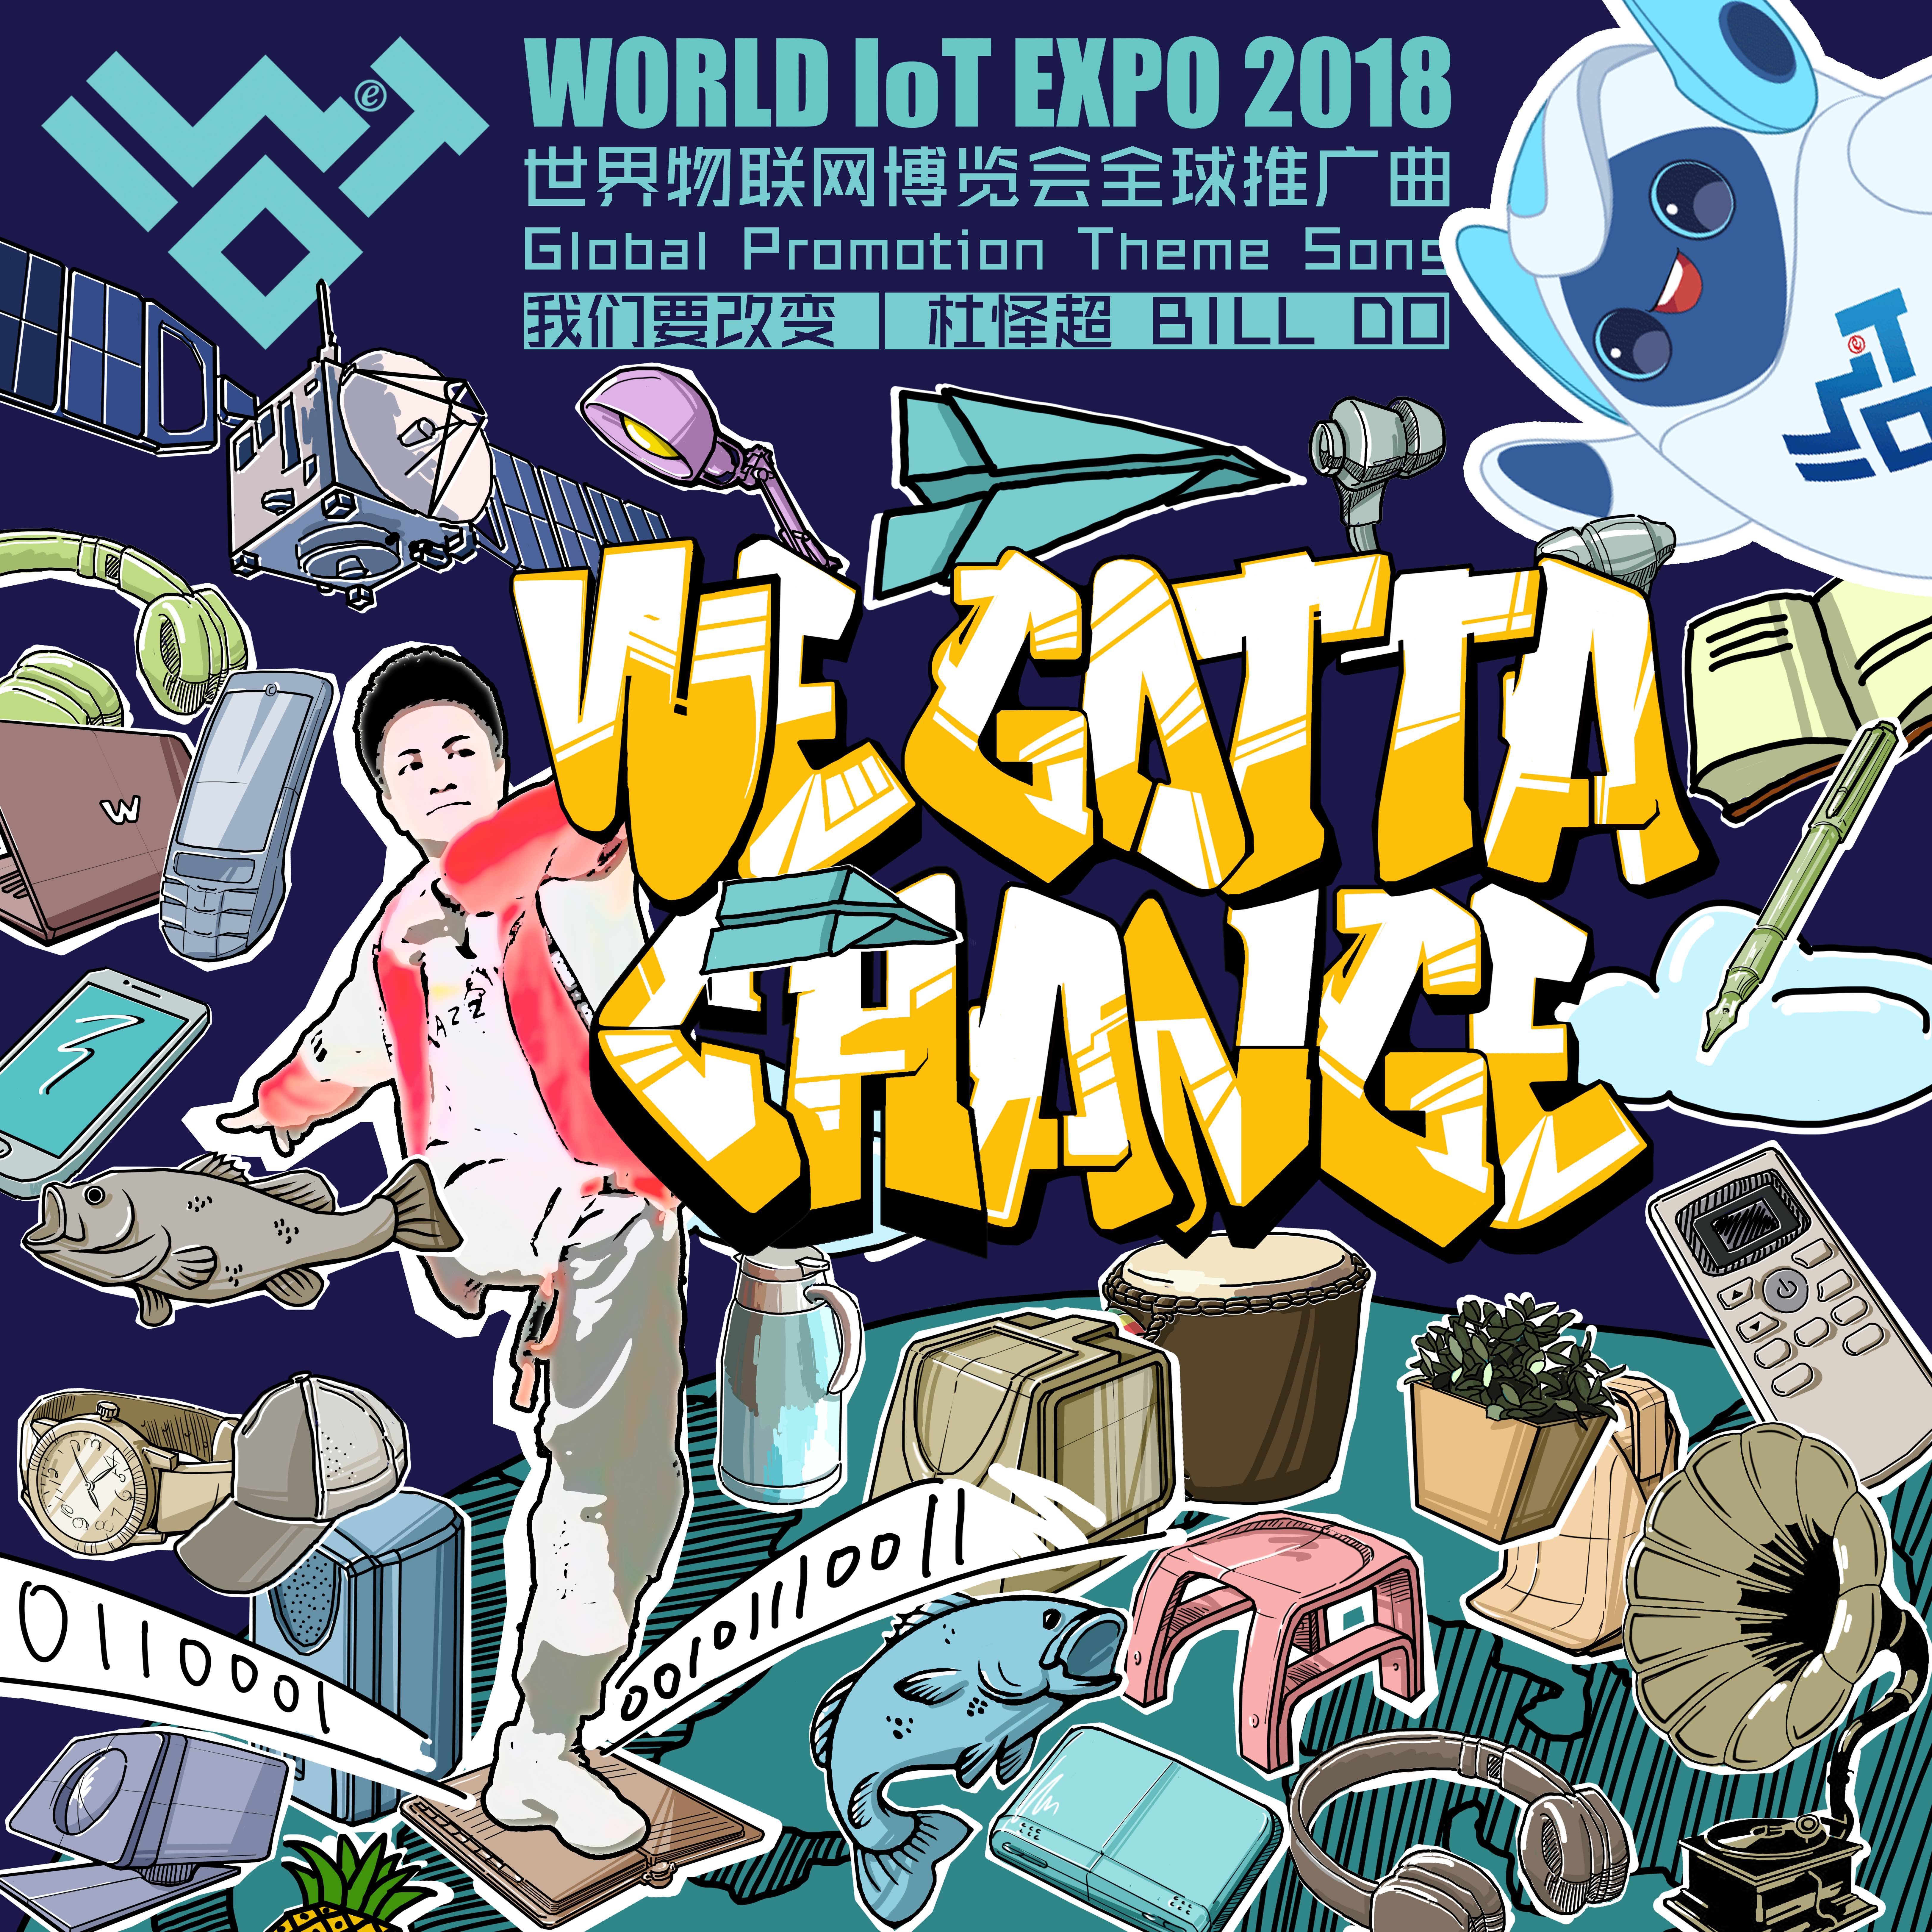 世界物聯網博覽會全球推廣曲《WGC》封面